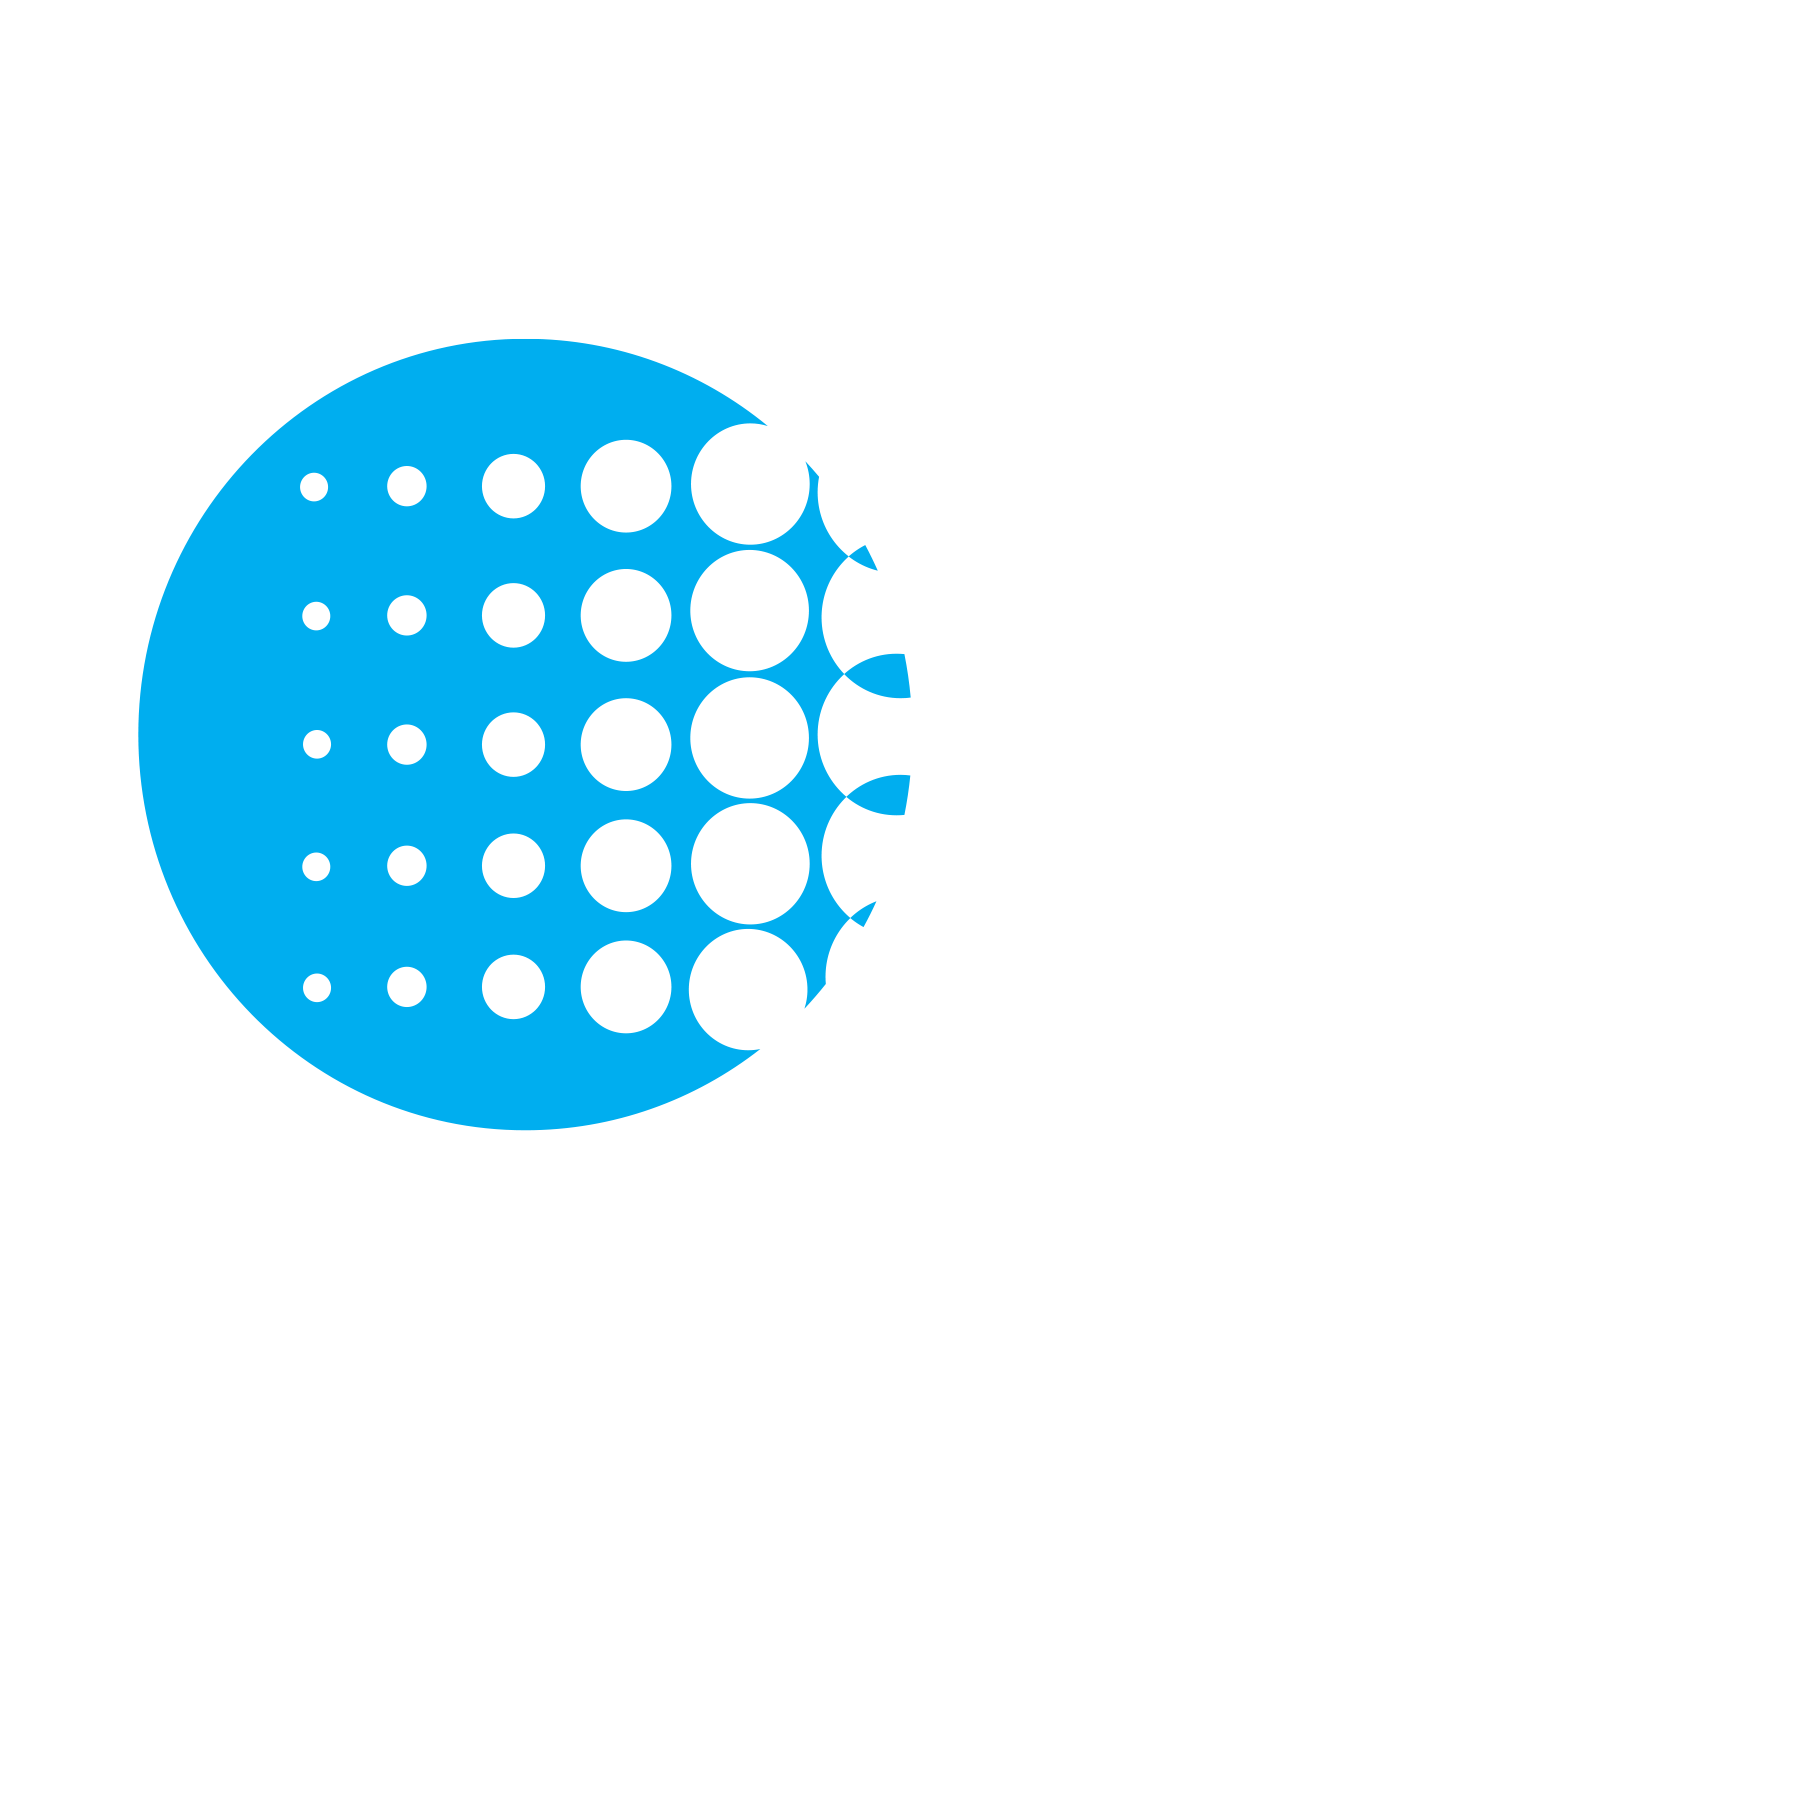 Bg light